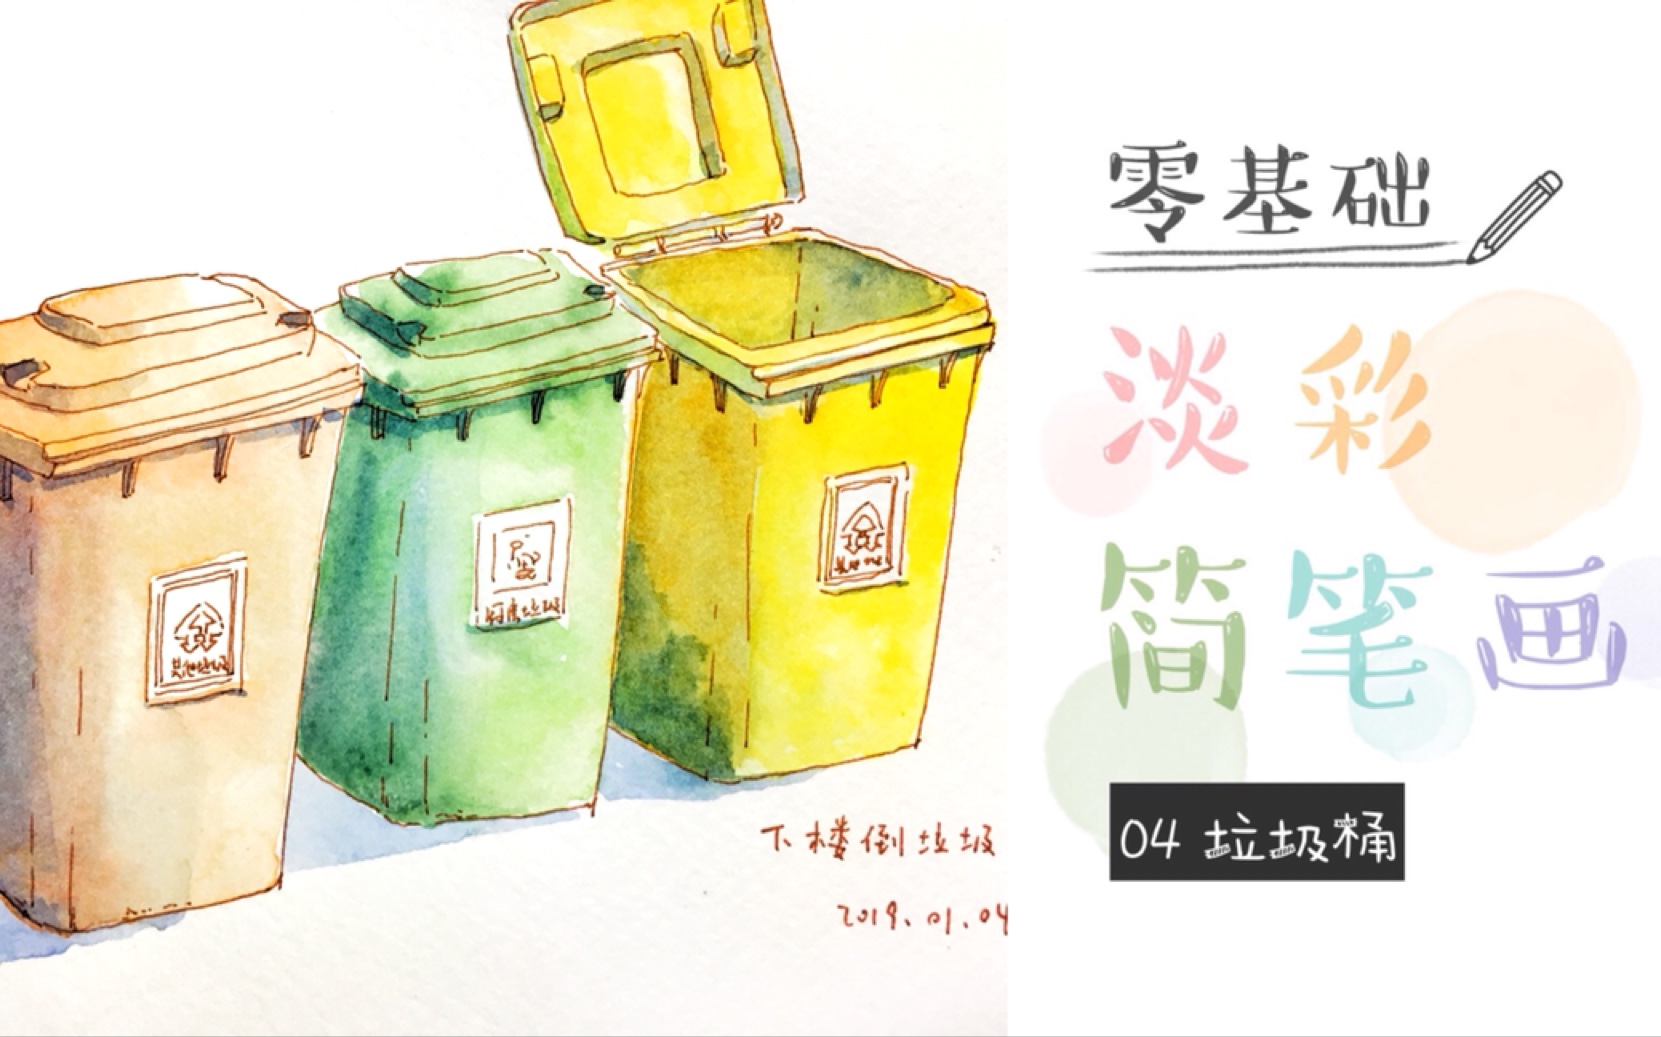 垃圾桶手绘马克笔图片